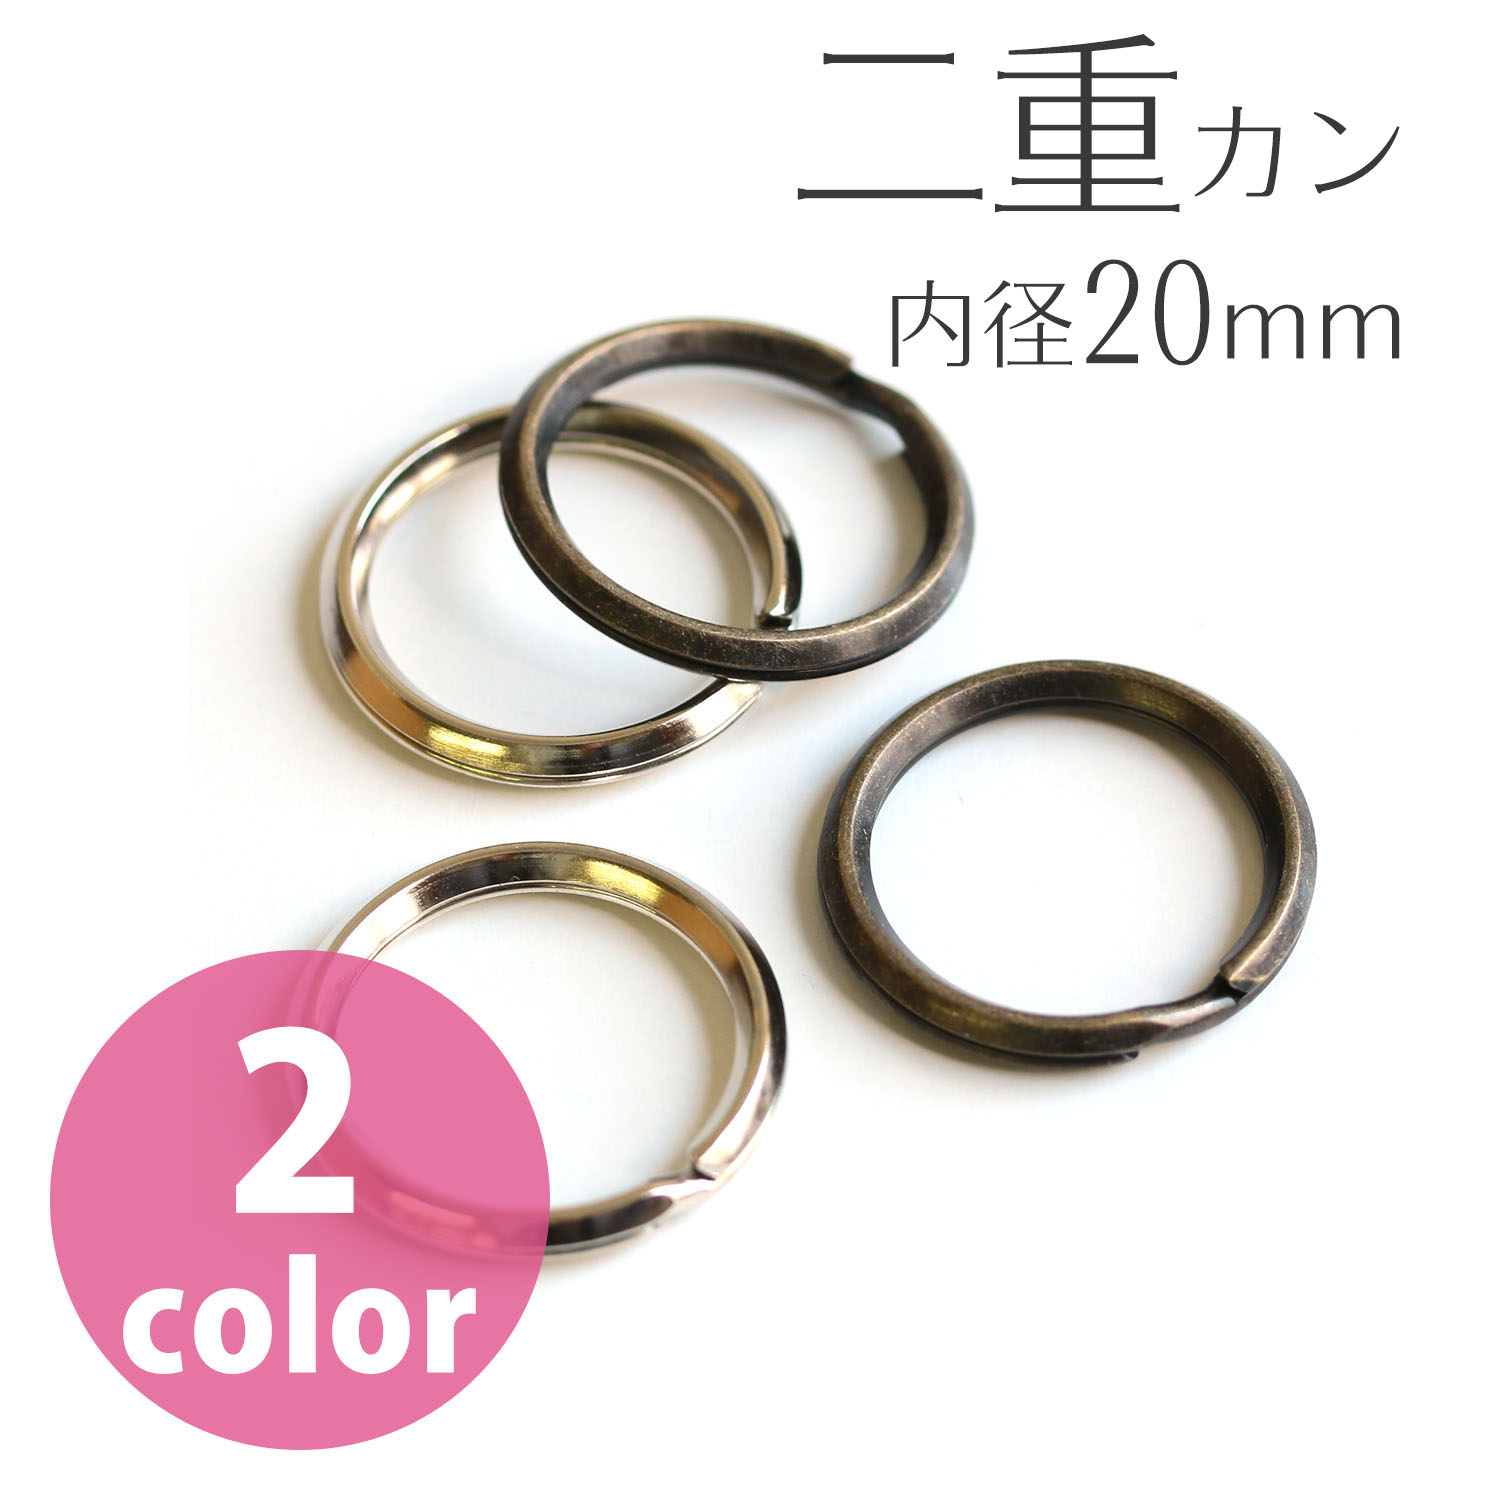 Split Rings outer diameter 25mm, inner diameter 20mm S 30pcs (bag)